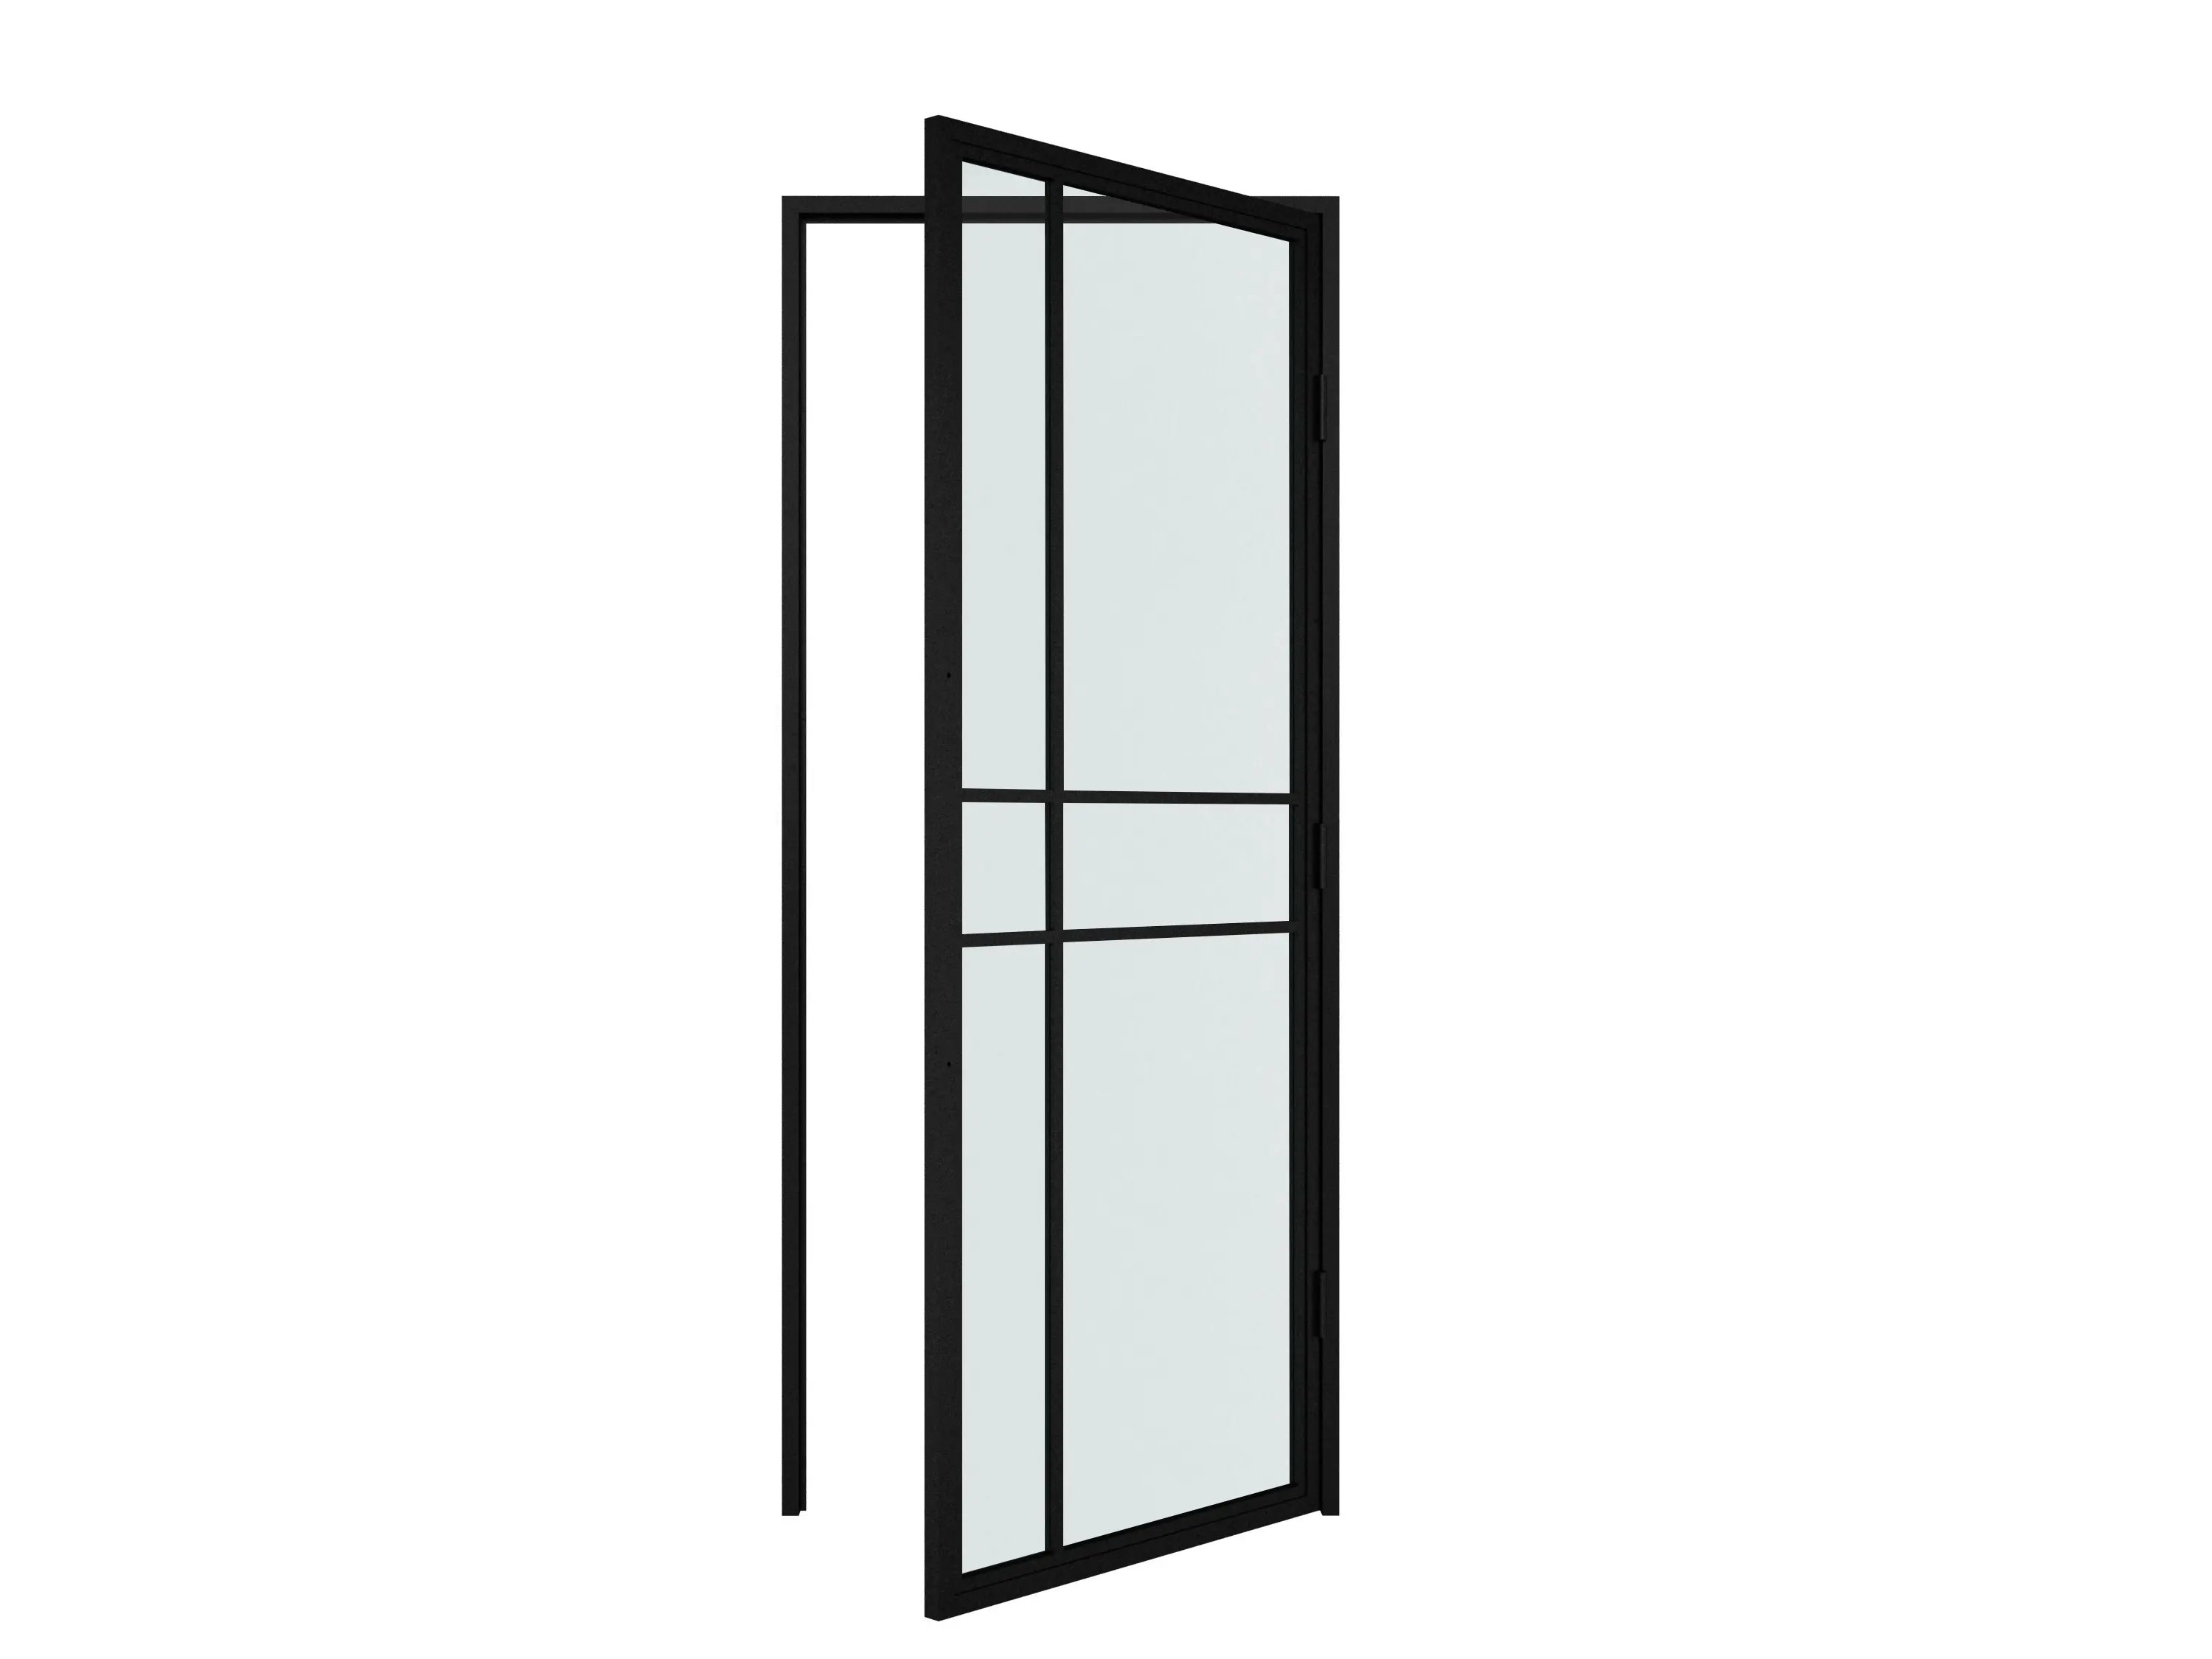 Glastür im französischen Stil und schwenkbare Glastür mit Stahlrahmen, Schloss tür mit Glas-und Stahlrahmen